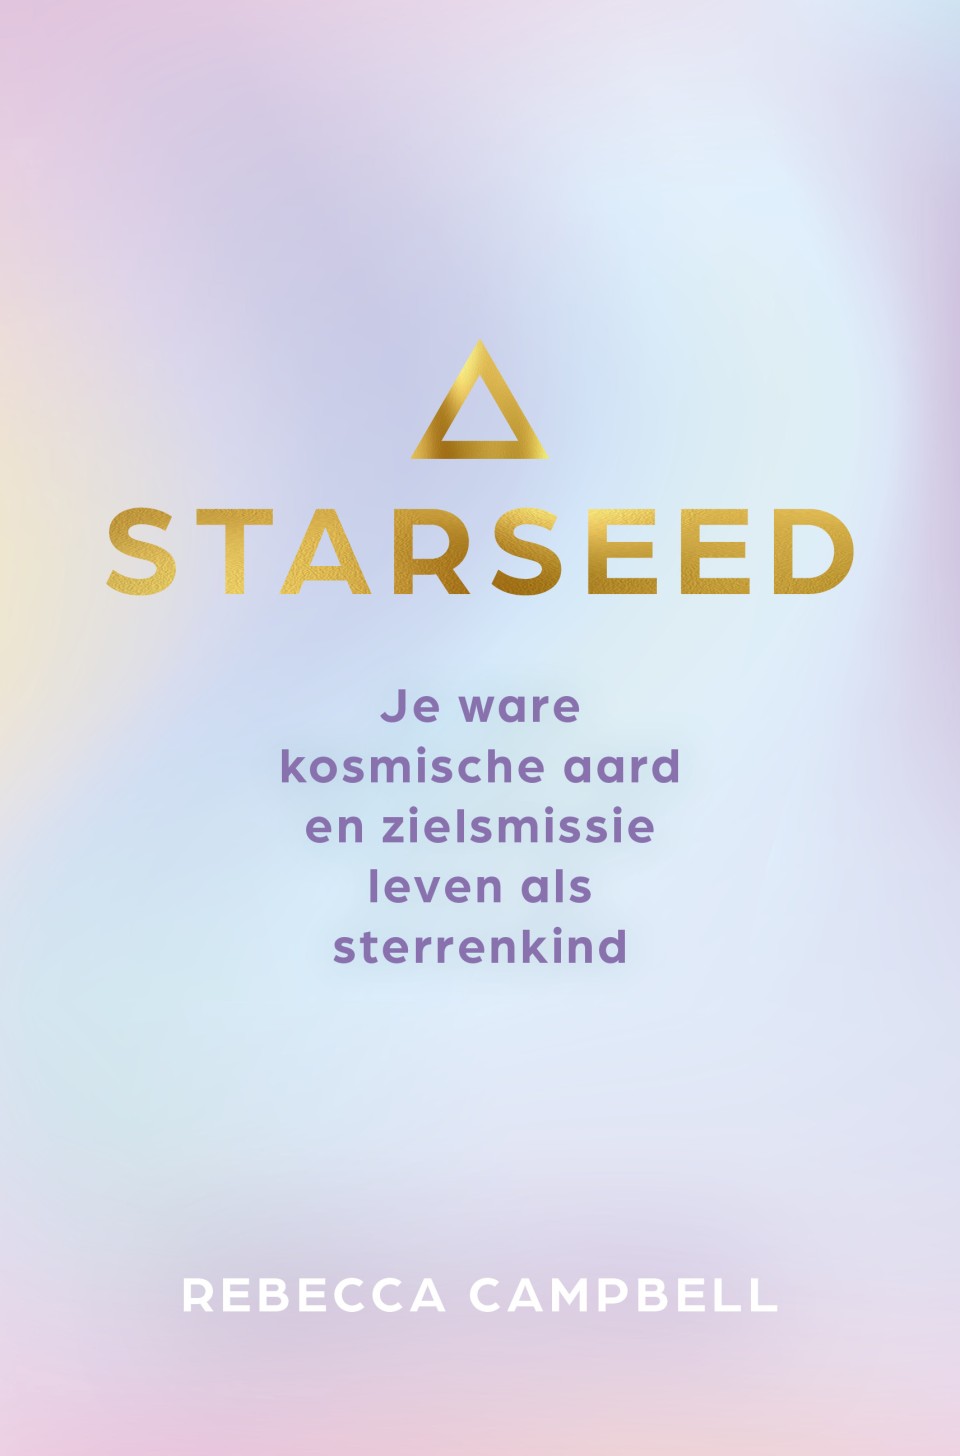 1. Starseed